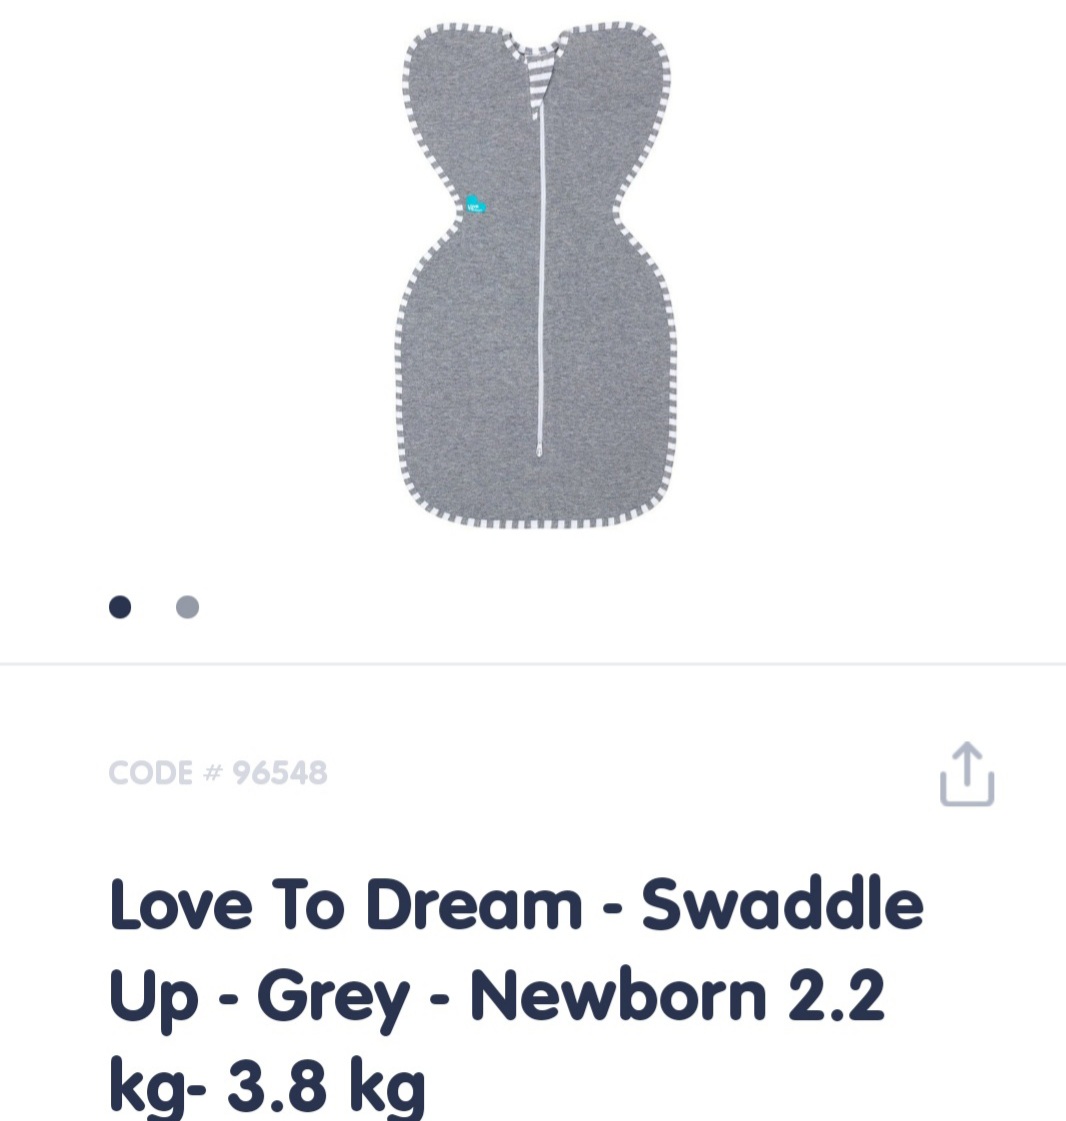 Love to dream swaddle - newborn